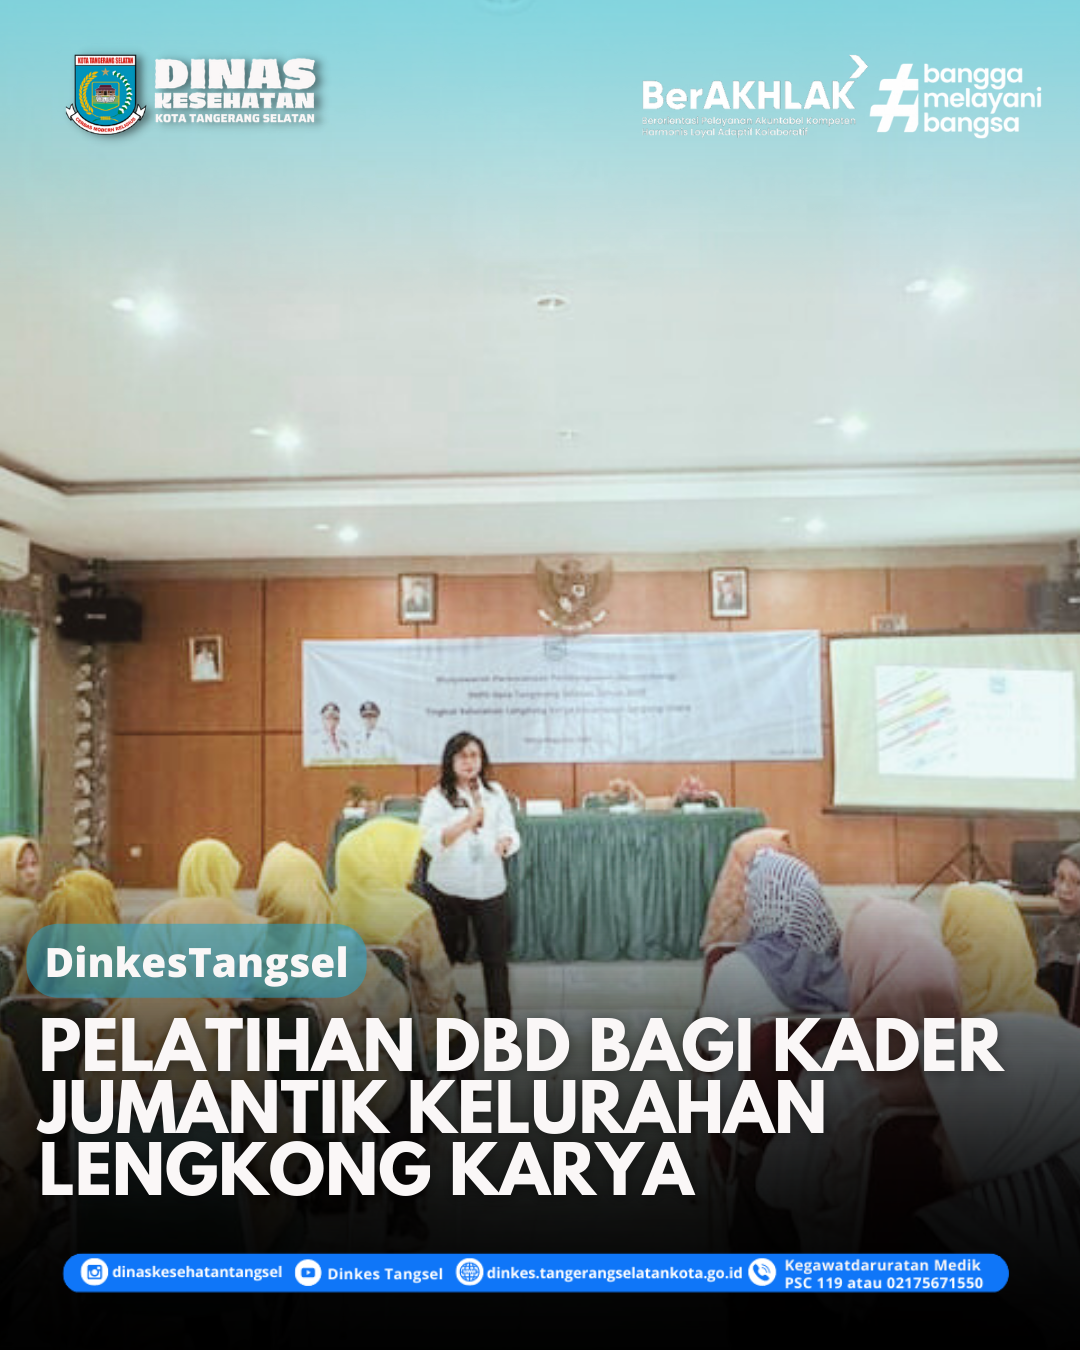 Pelatihan DBD bagi kader jumantik Kelurahan Lengkong Karya